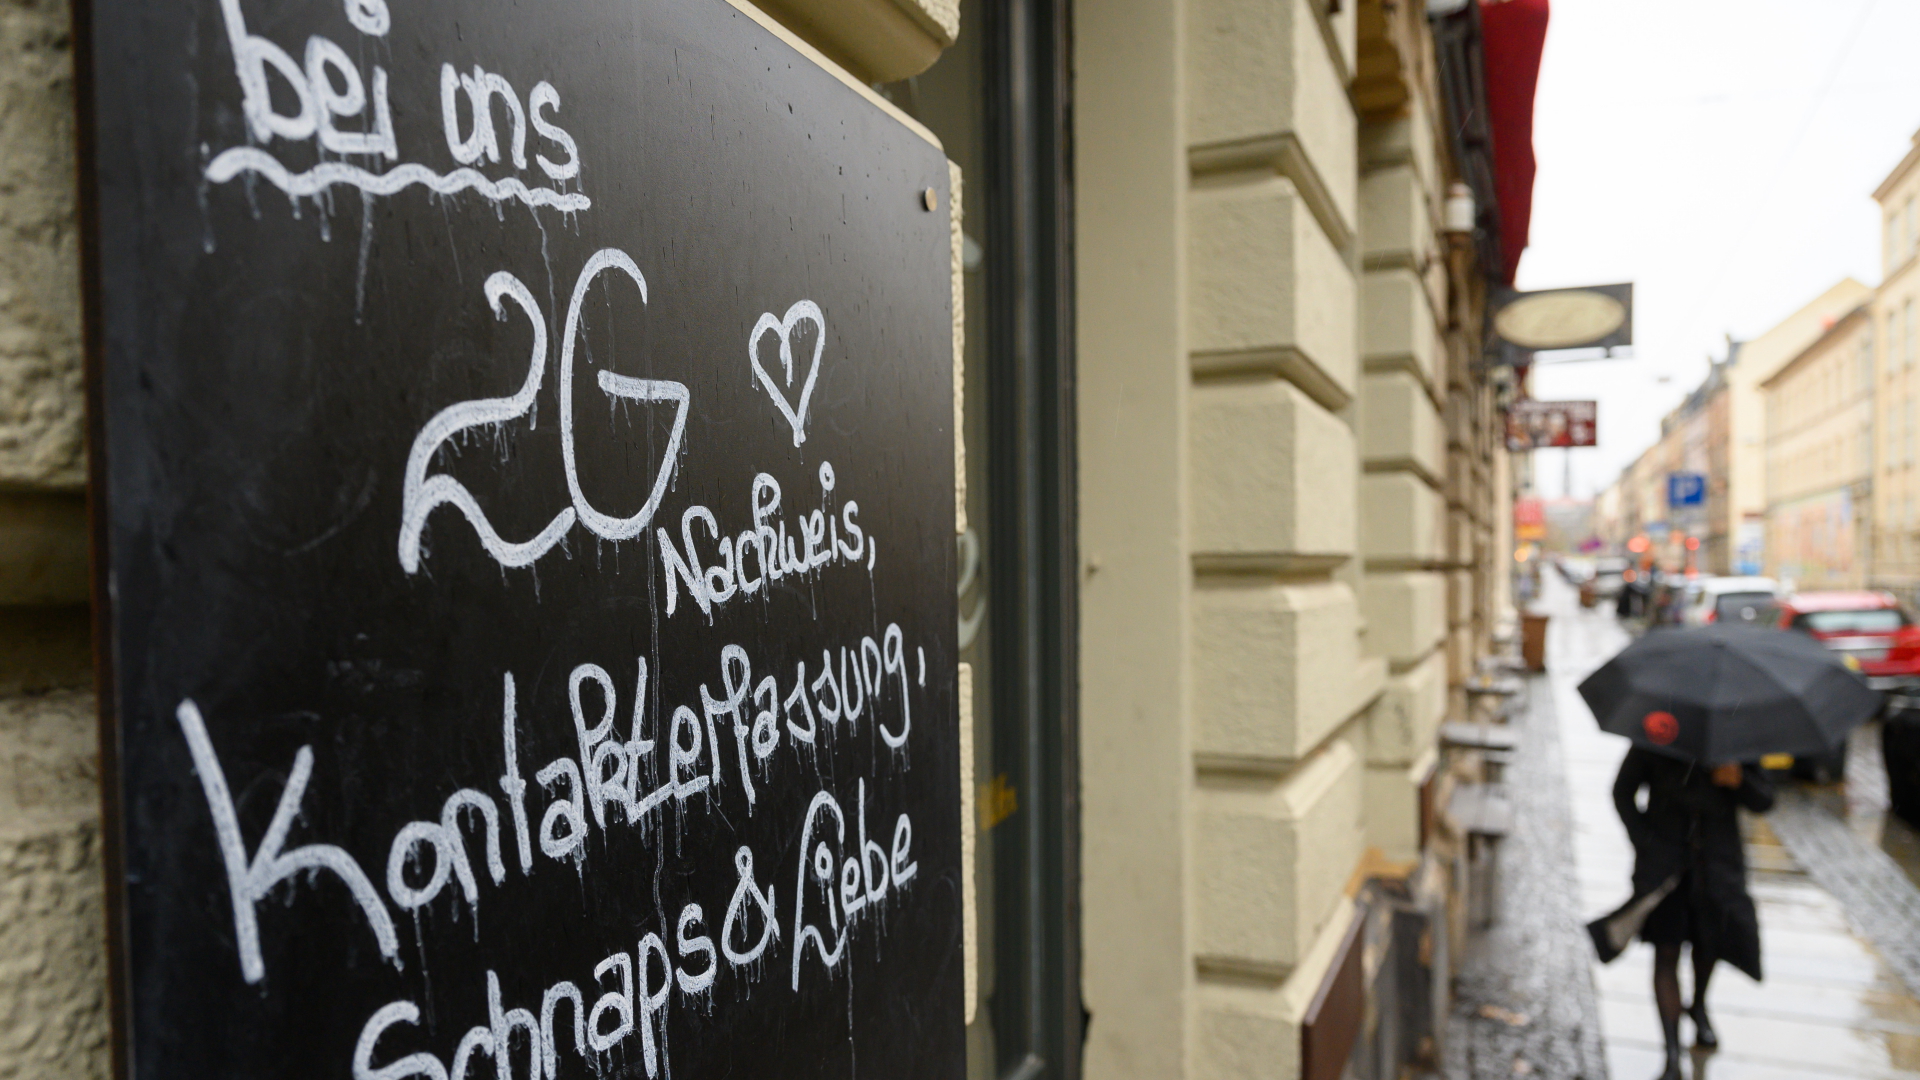 : "Bei uns 2G Nachweis, Kontakterfassung, Schnaps & Liebe" steht auf einem Schild an einer Bar in der Dresdner Neustadt | dpa